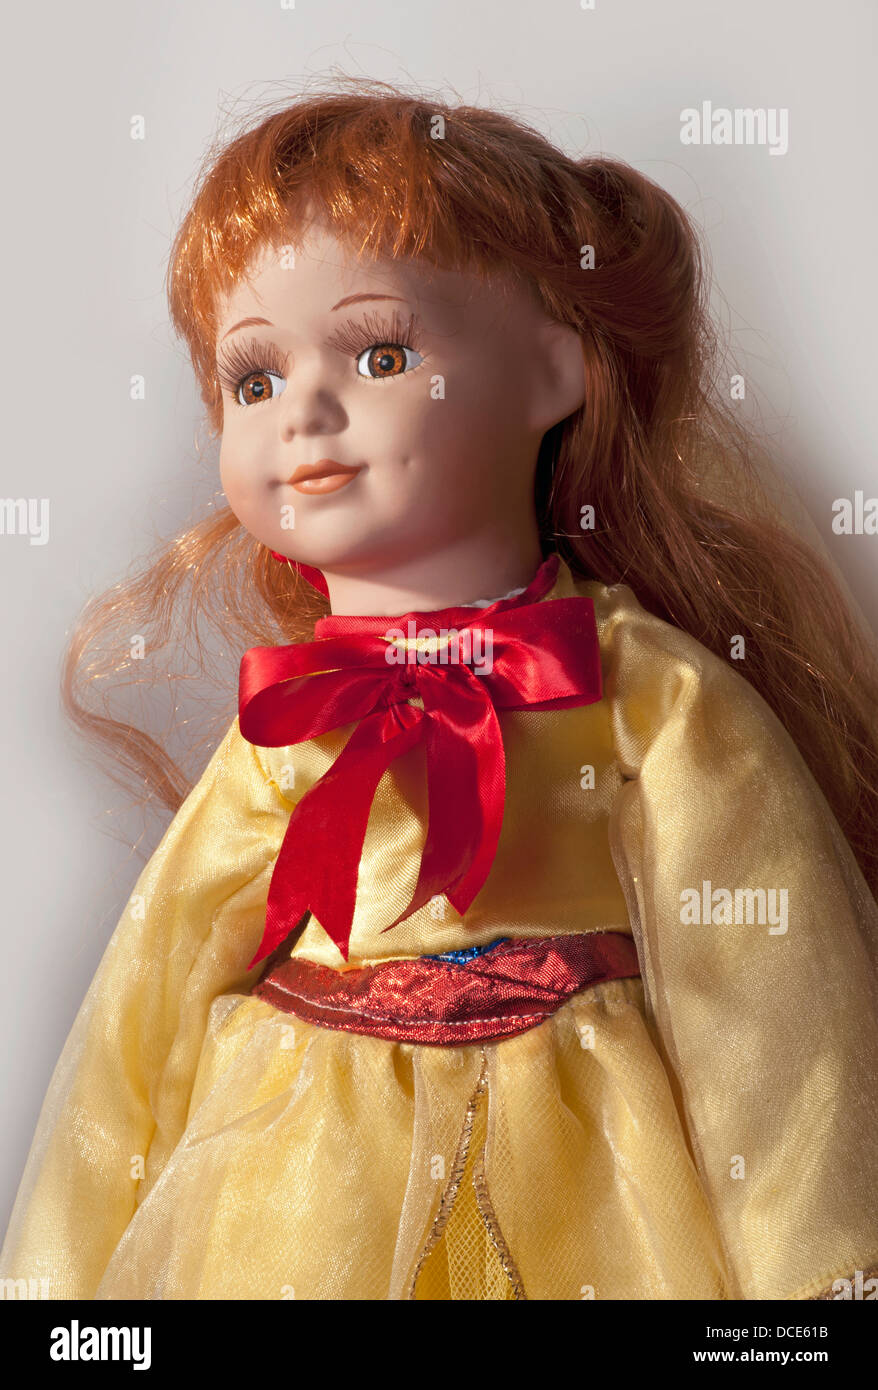 Gesicht der hübschen Puppe mit gelben Kleid, braune Augen und rote Haare Stockfoto